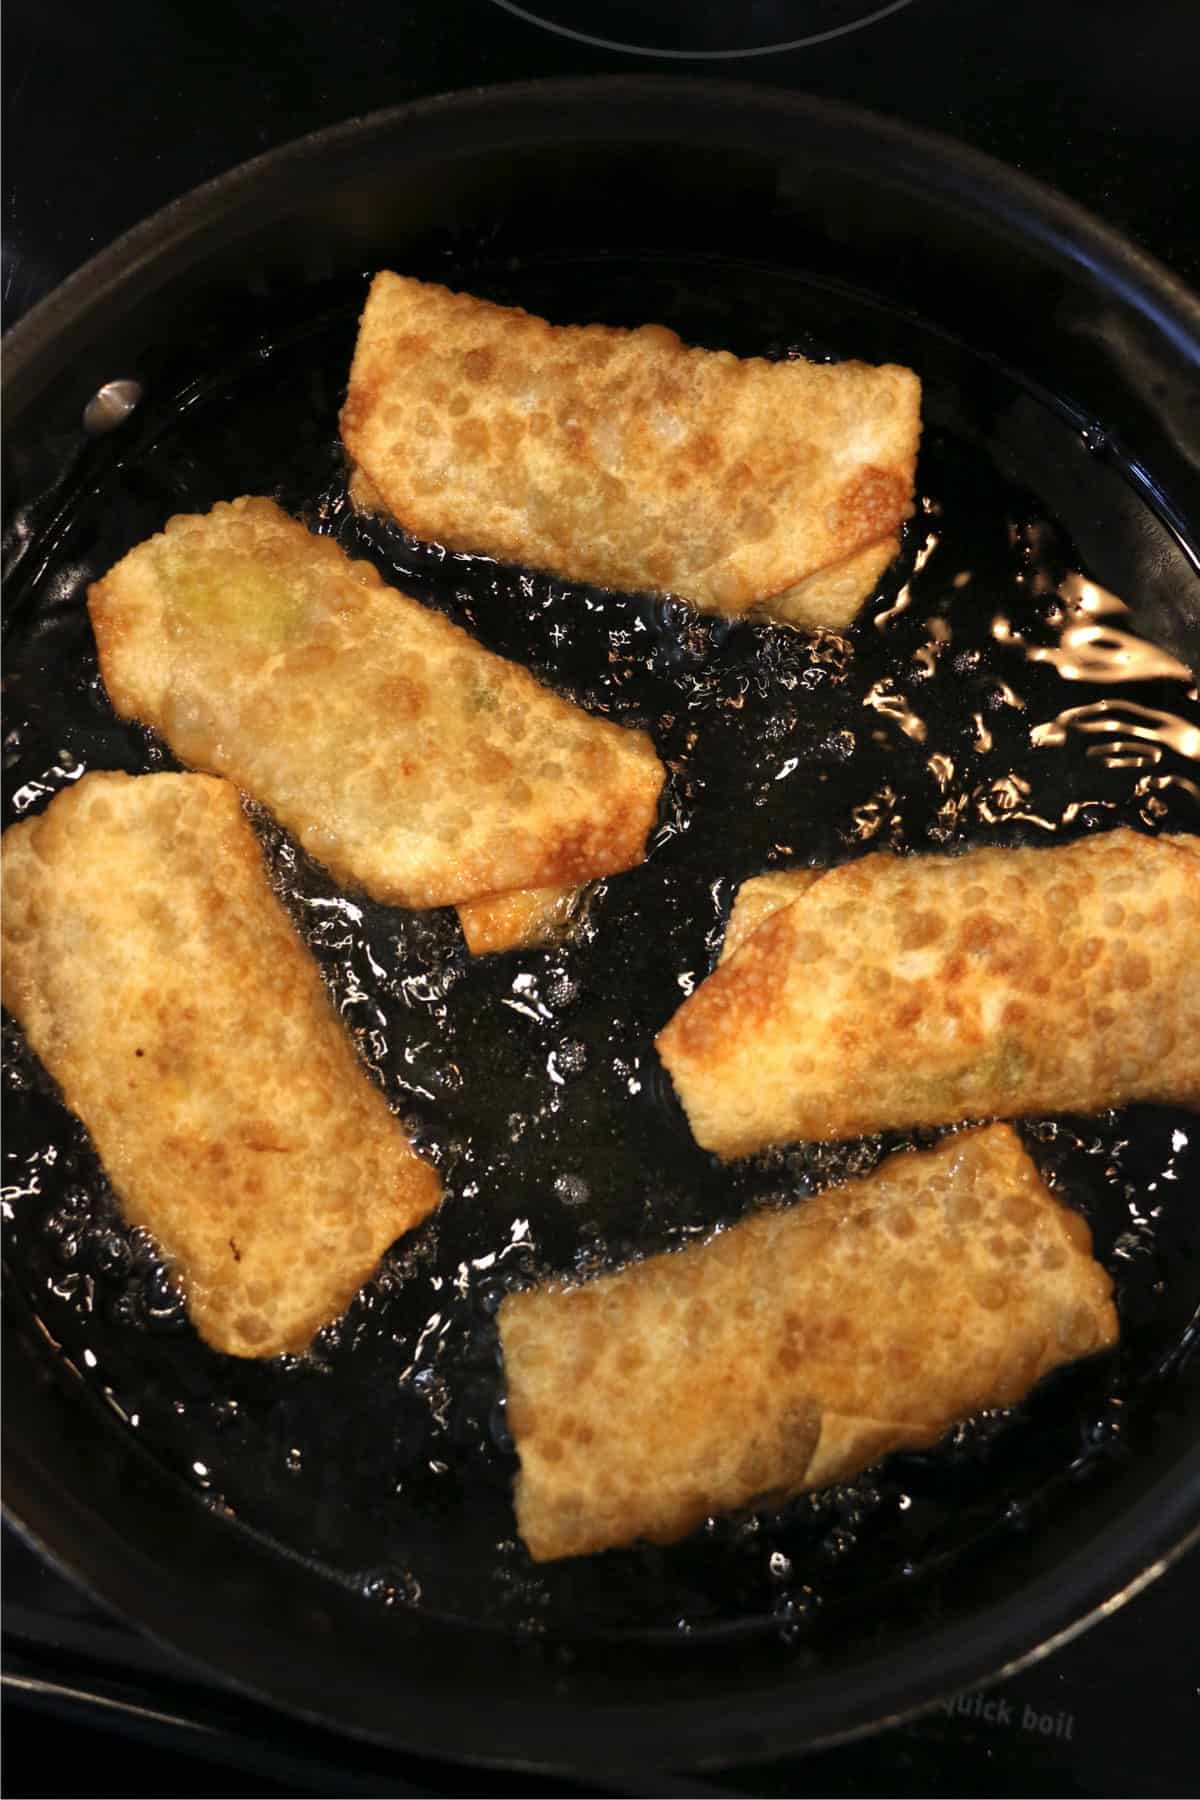 Egg rolls frying in oil in a skillet